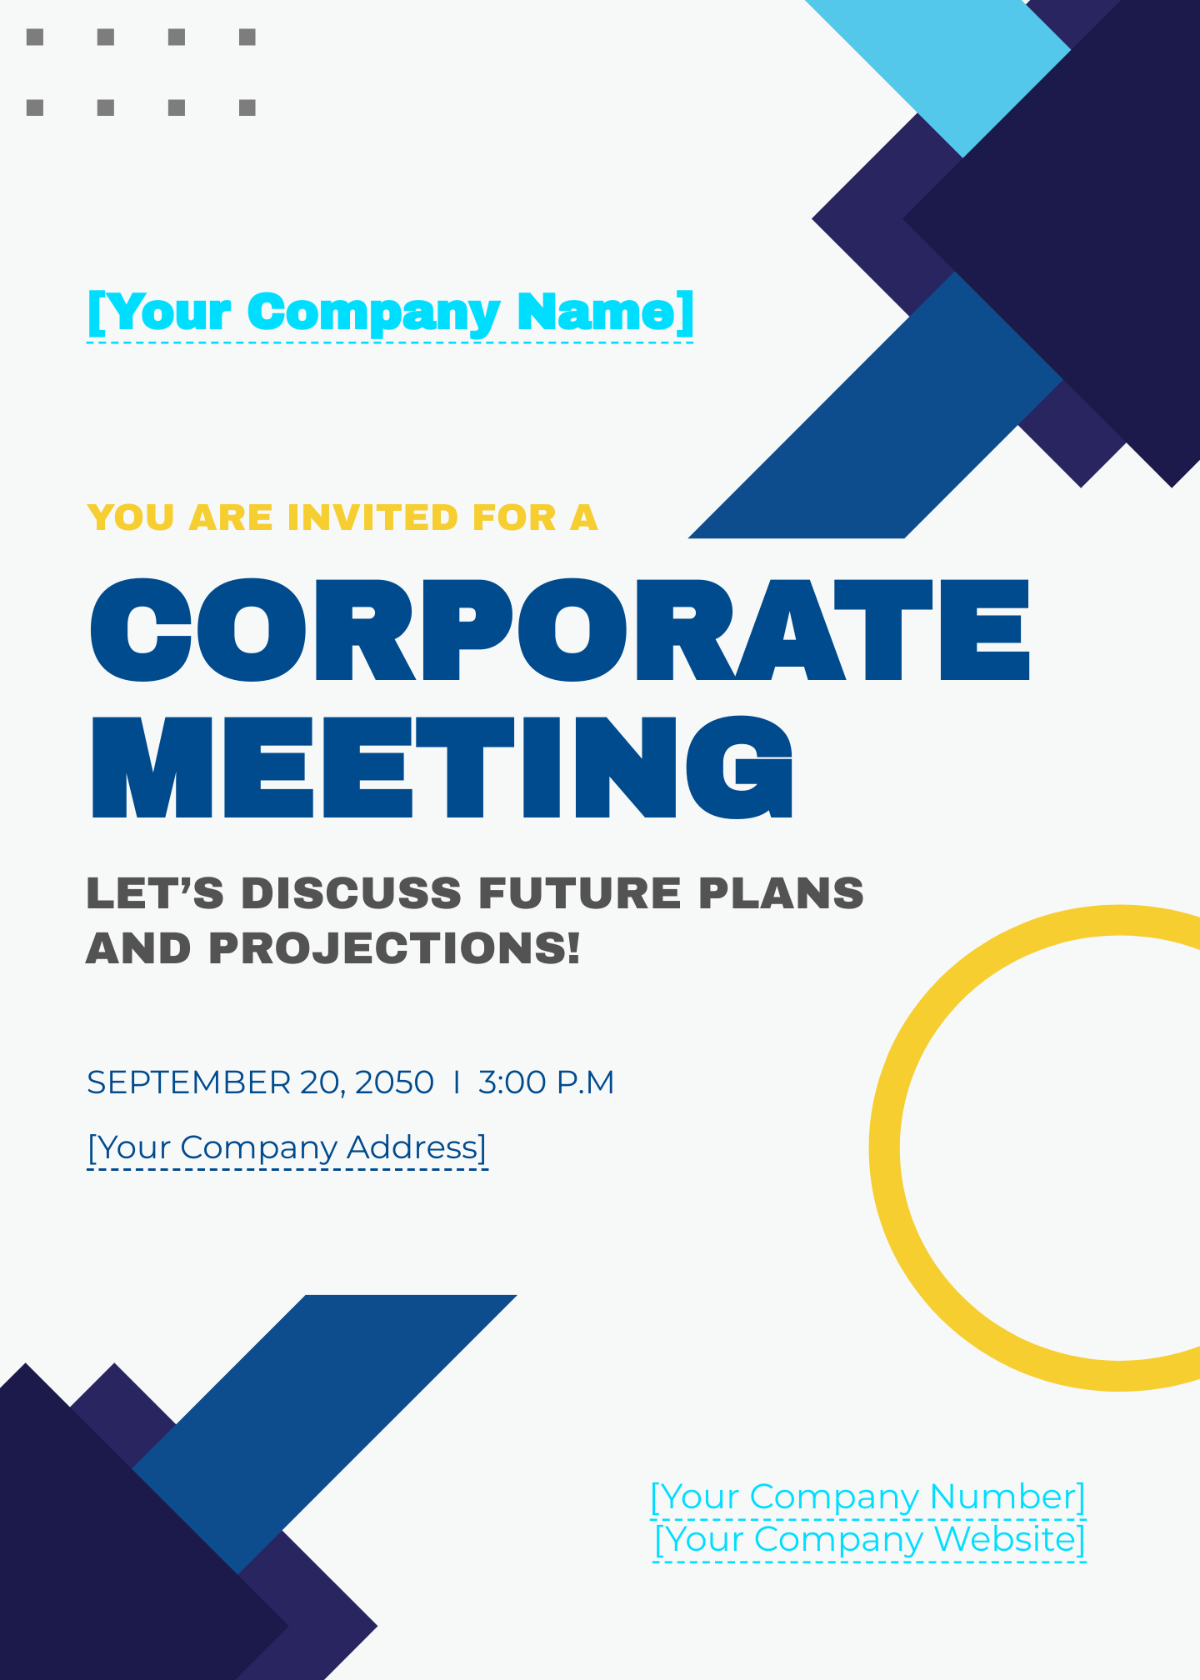 Sample Meeting Invitation Template